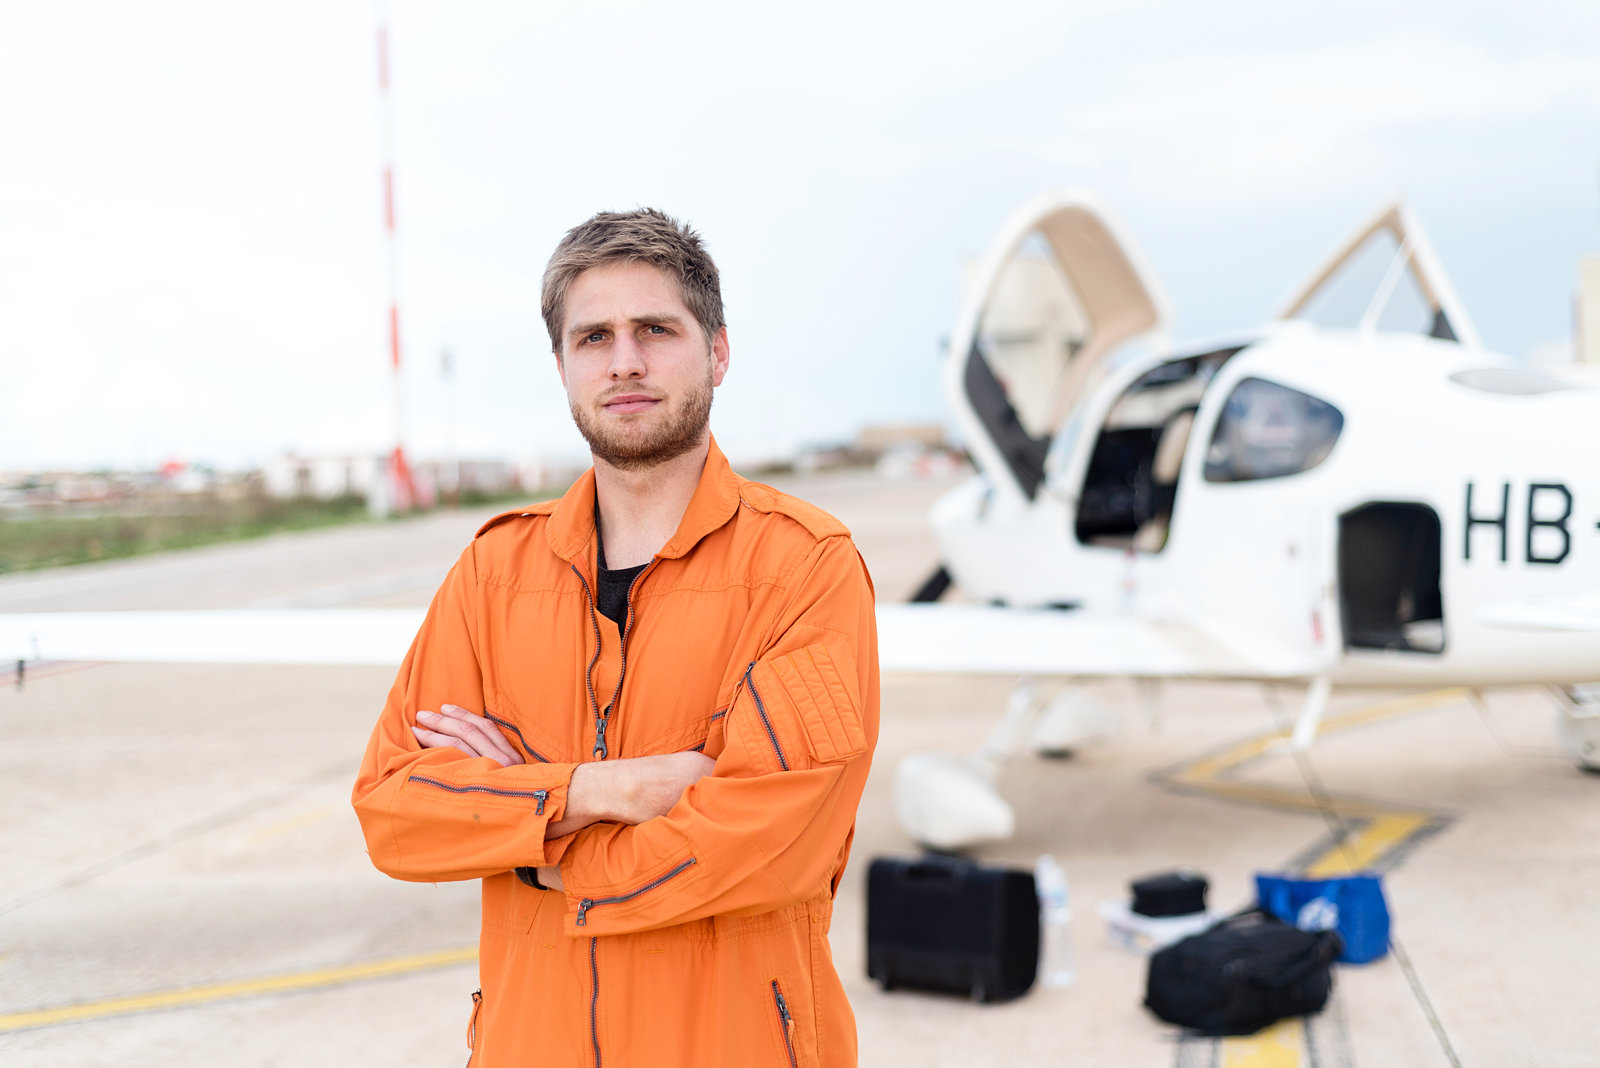 Pascal Stadelmann ist Teil der humanitären Piloteninitiative, die im Mittelmeer nach Booten in Seenot Ausschau hält.